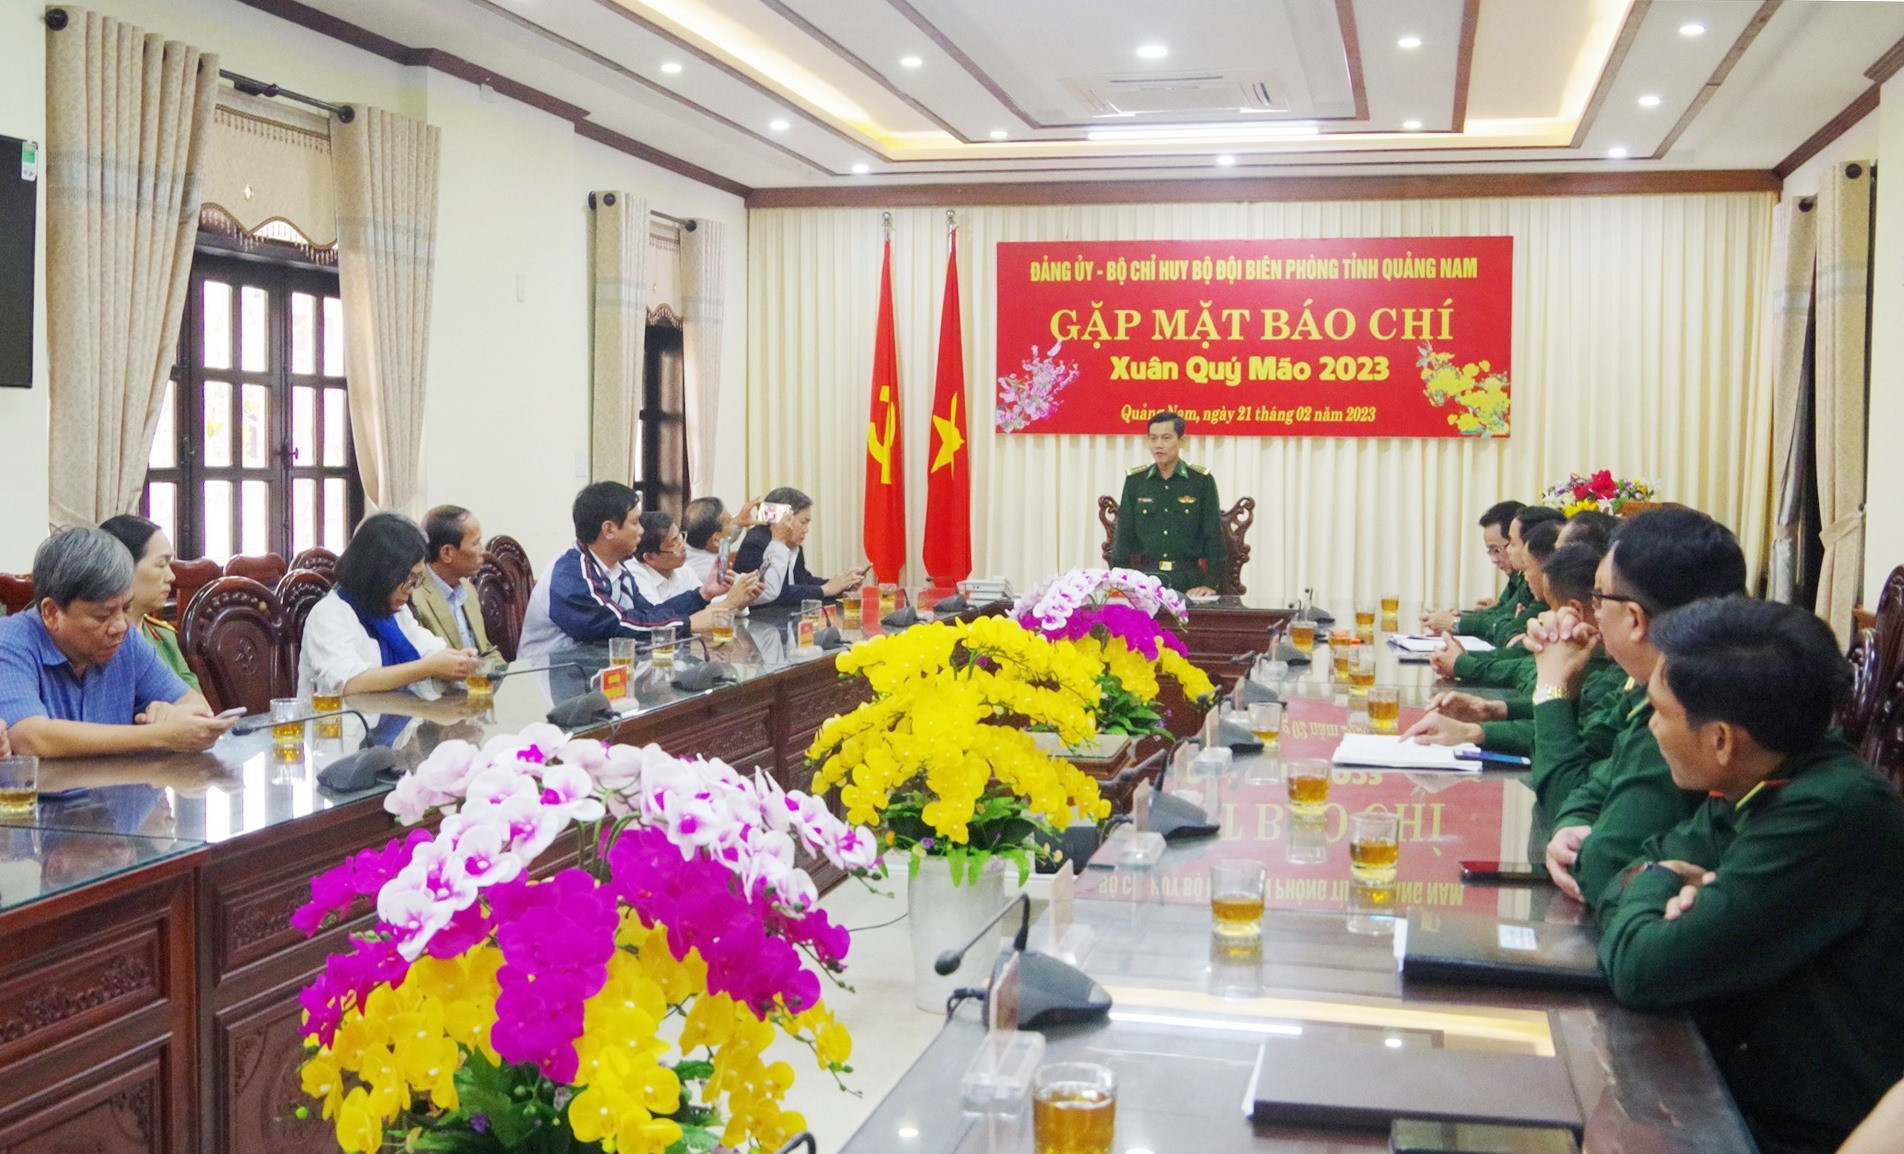 Đảng ủy, Bộ Chỉ huy Bộ đội Biên phòng (BĐBP) tỉnh Quảng Nam tổ chức gặp mặt báo chí đầu xuân Quý Mão.